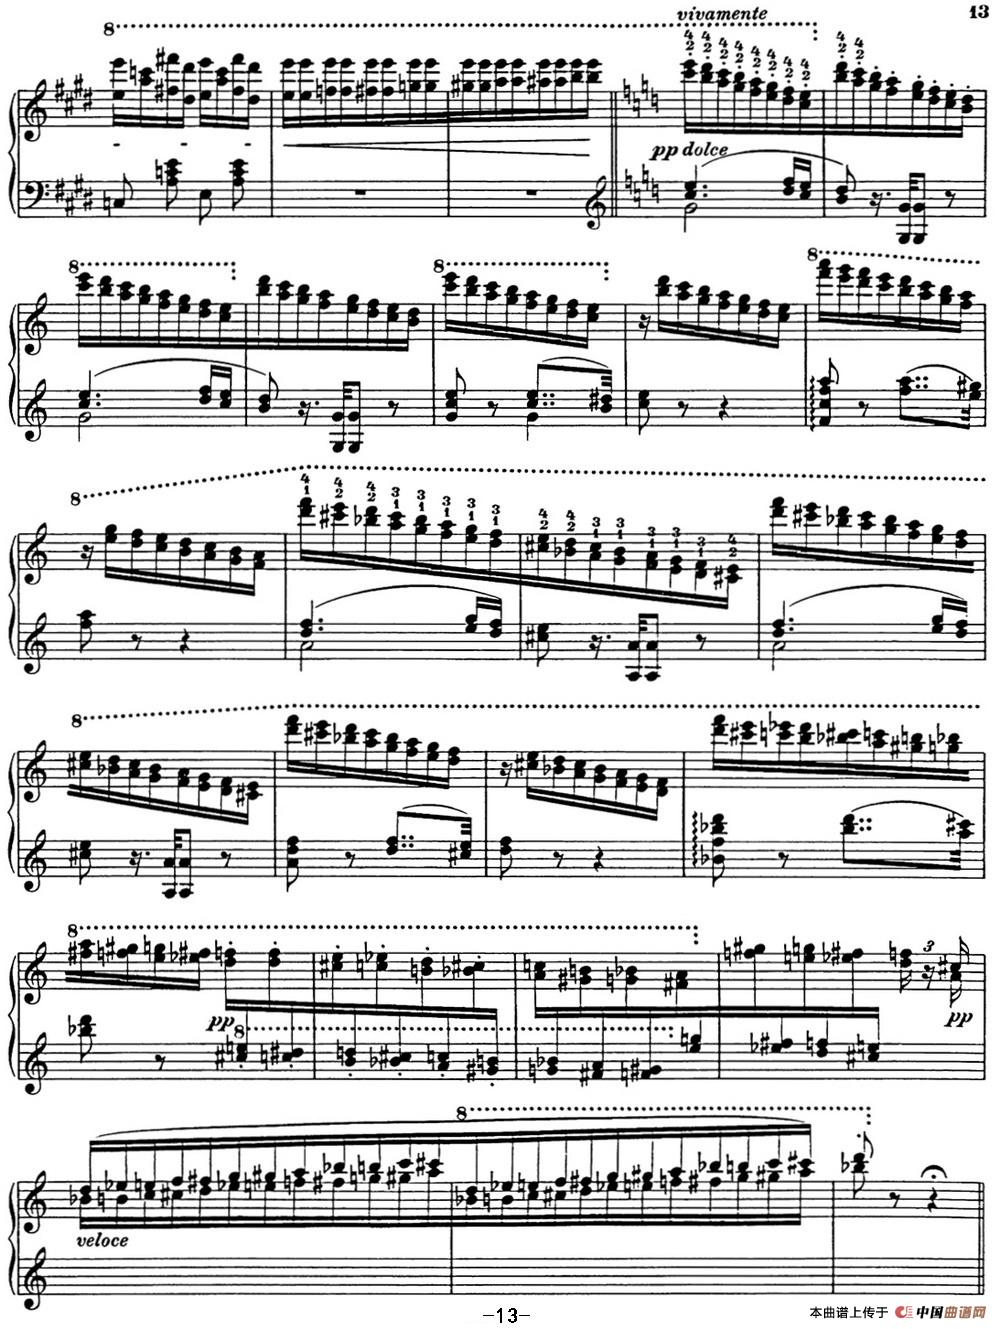 《李斯特 匈牙利狂想曲 Hungarian Rhapsodies S.244 No.1》钢琴曲谱图分享